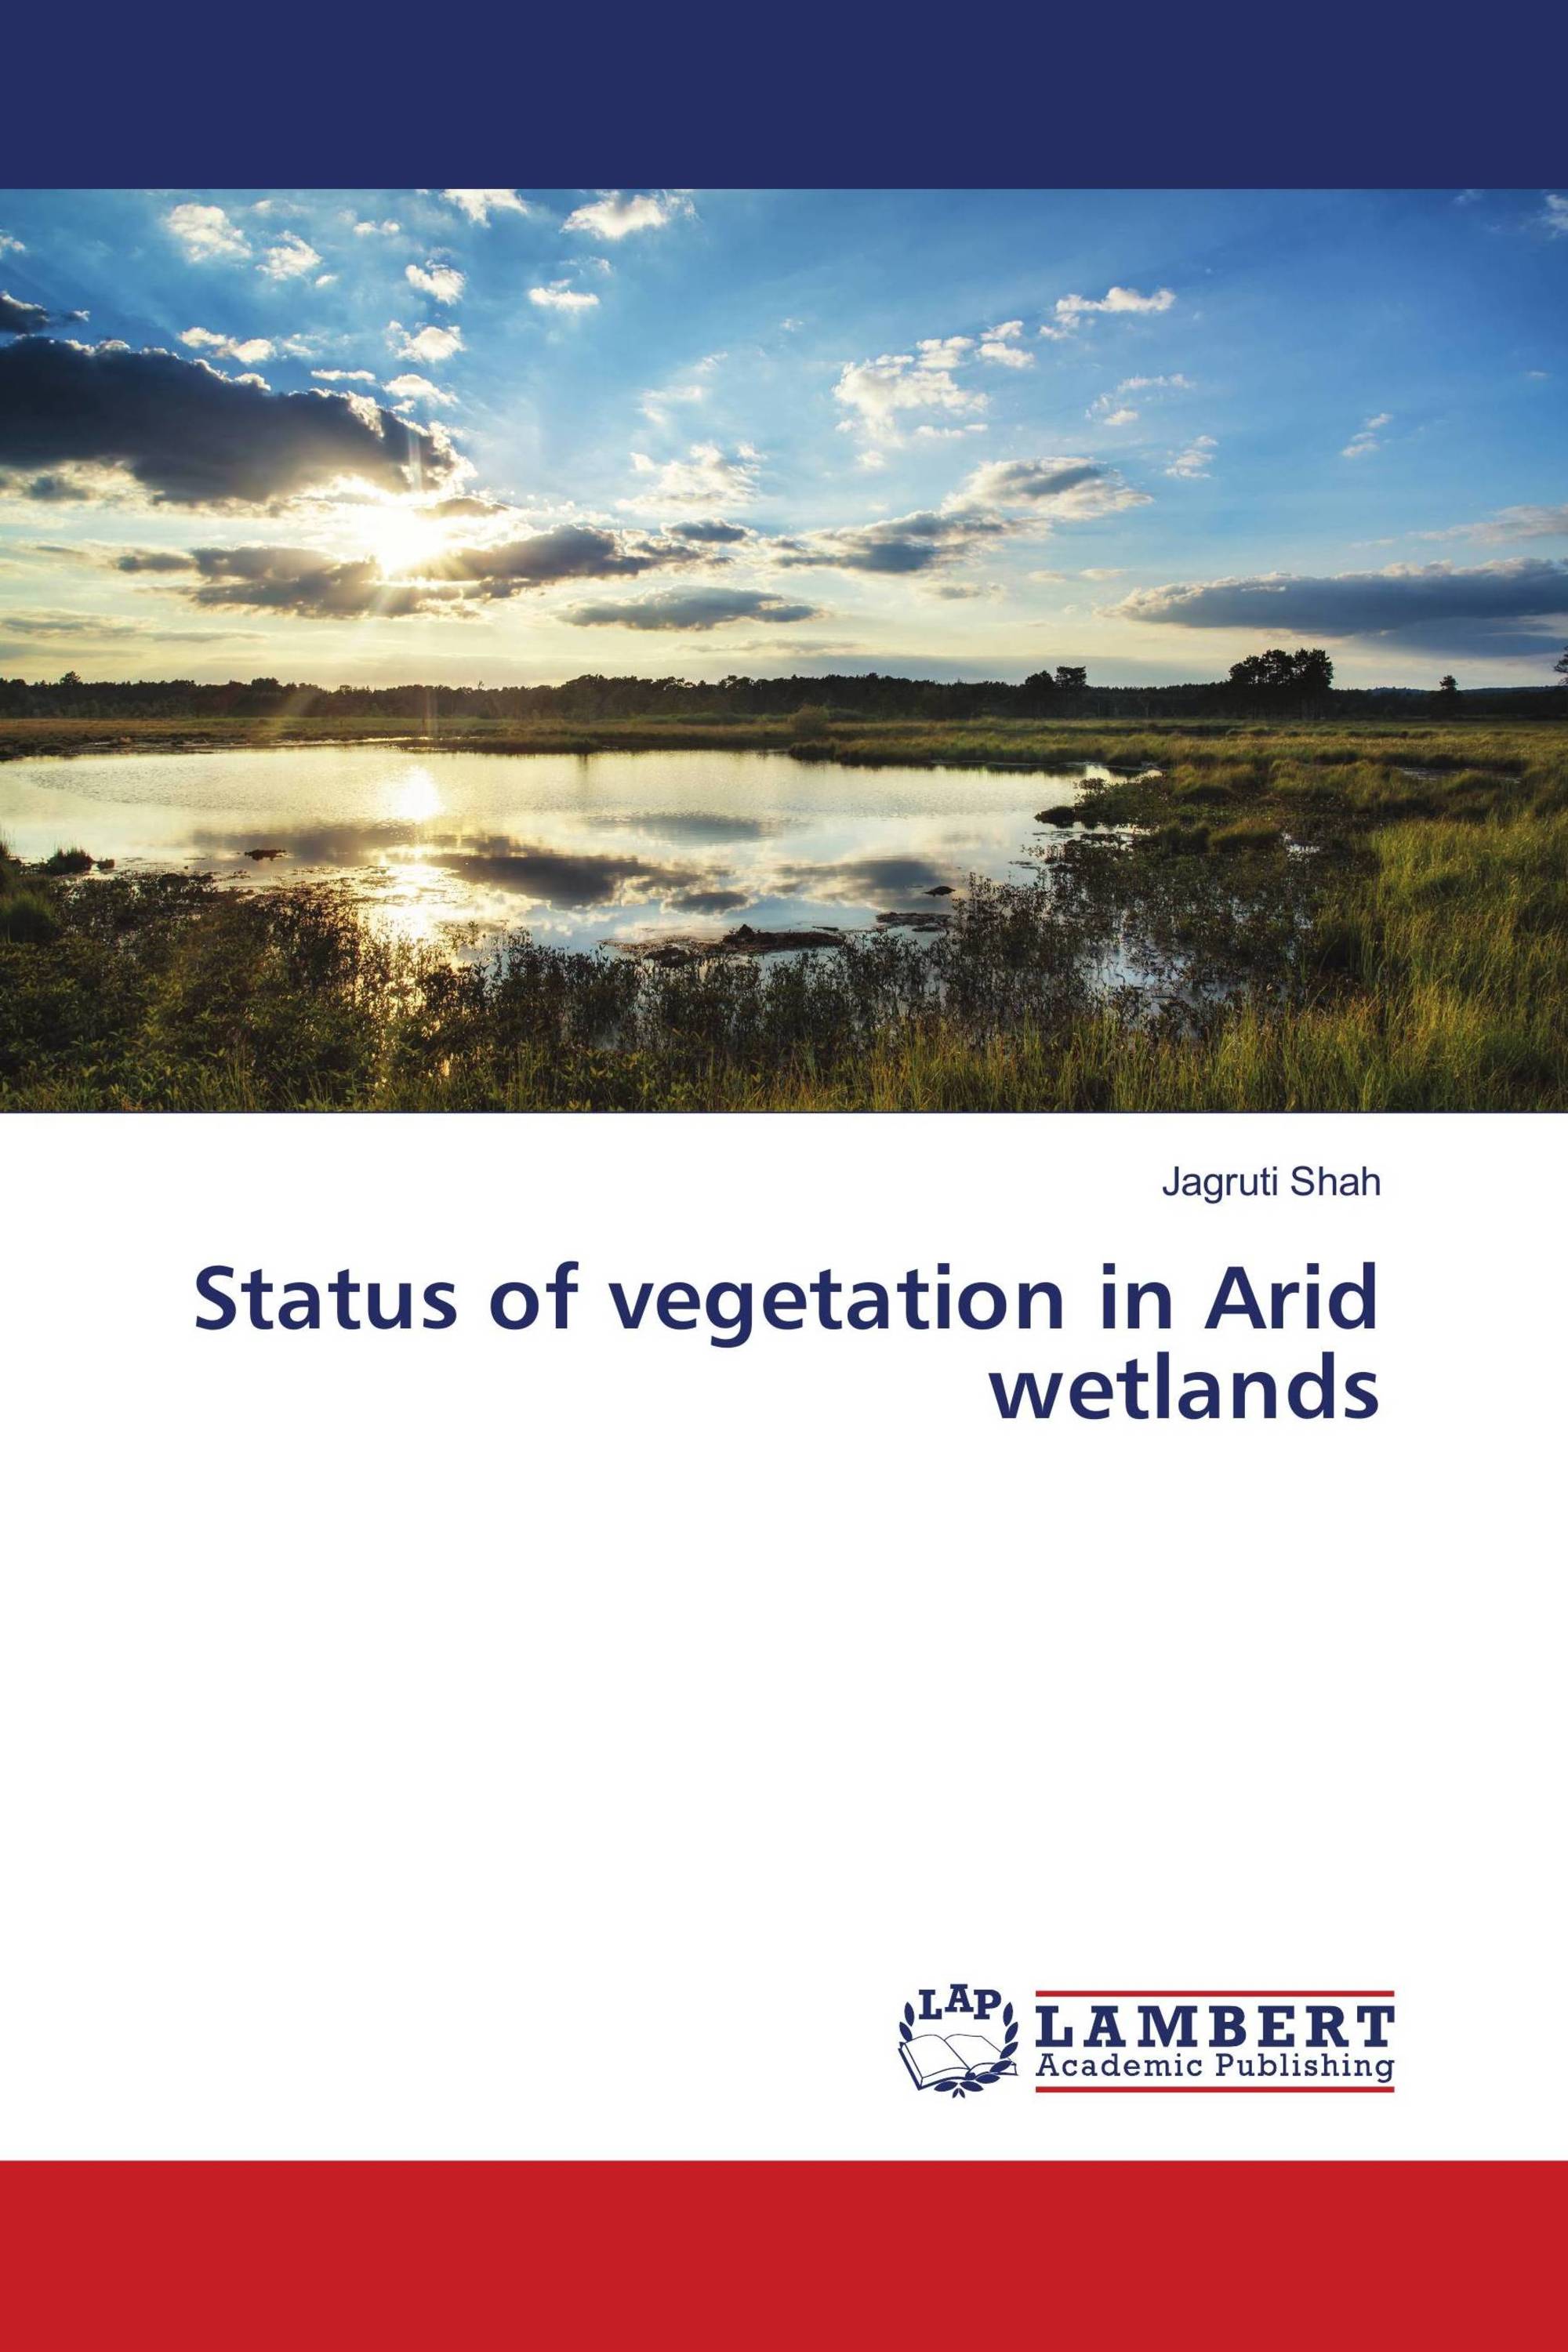 Status of vegetation in Arid wetlands